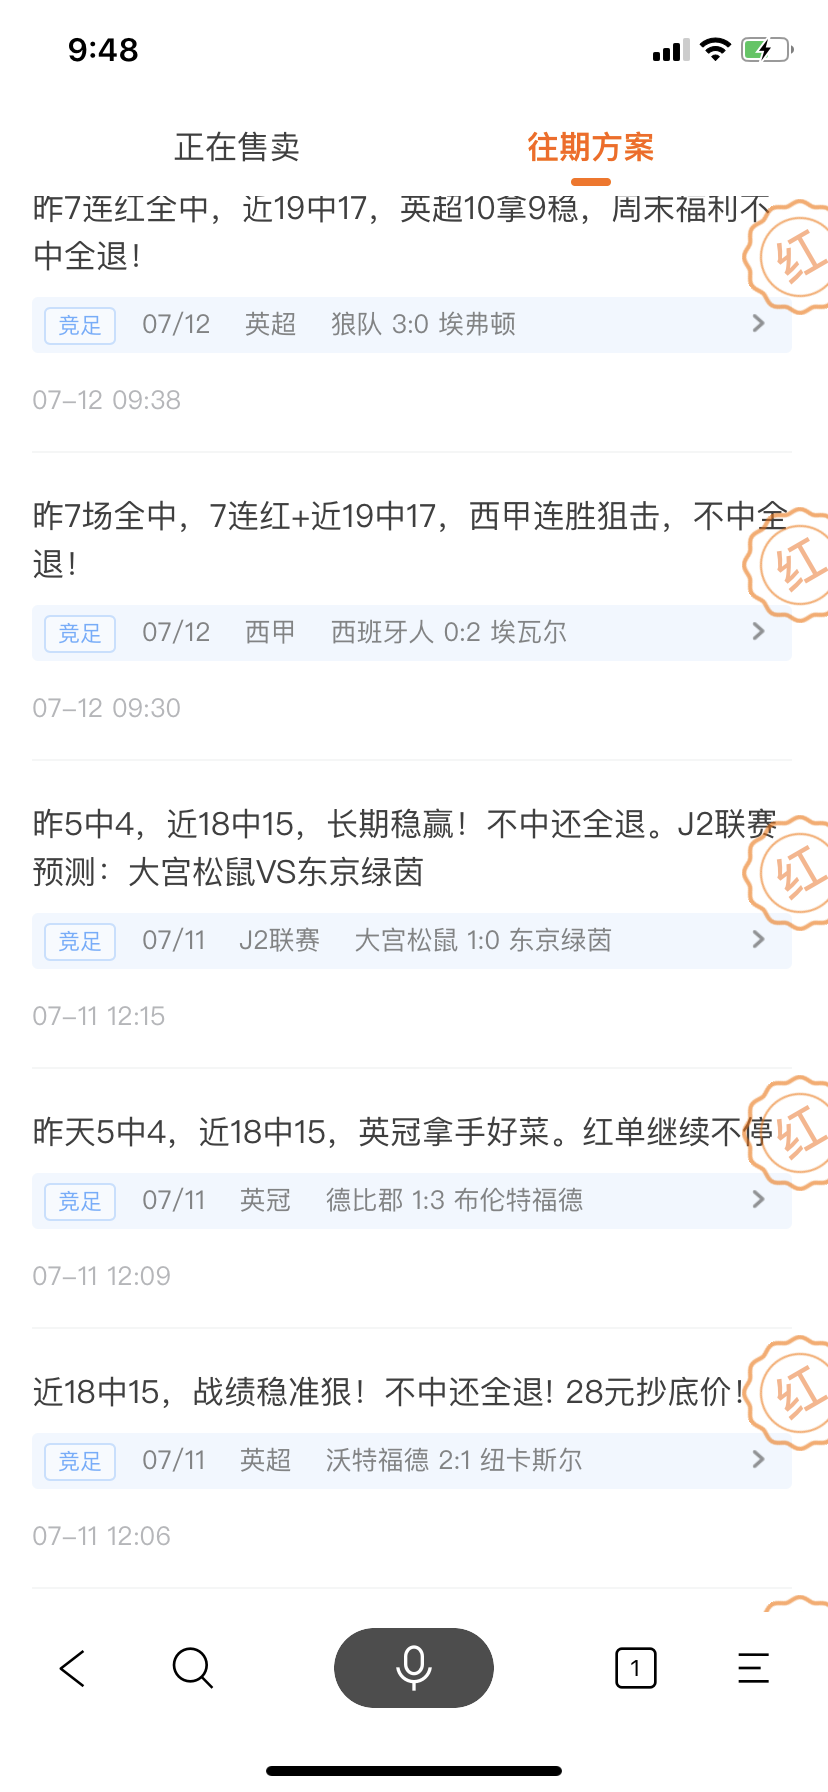 7月13日搜狐金彩红人榜：常胜明9连红 张杰解盘近27中23